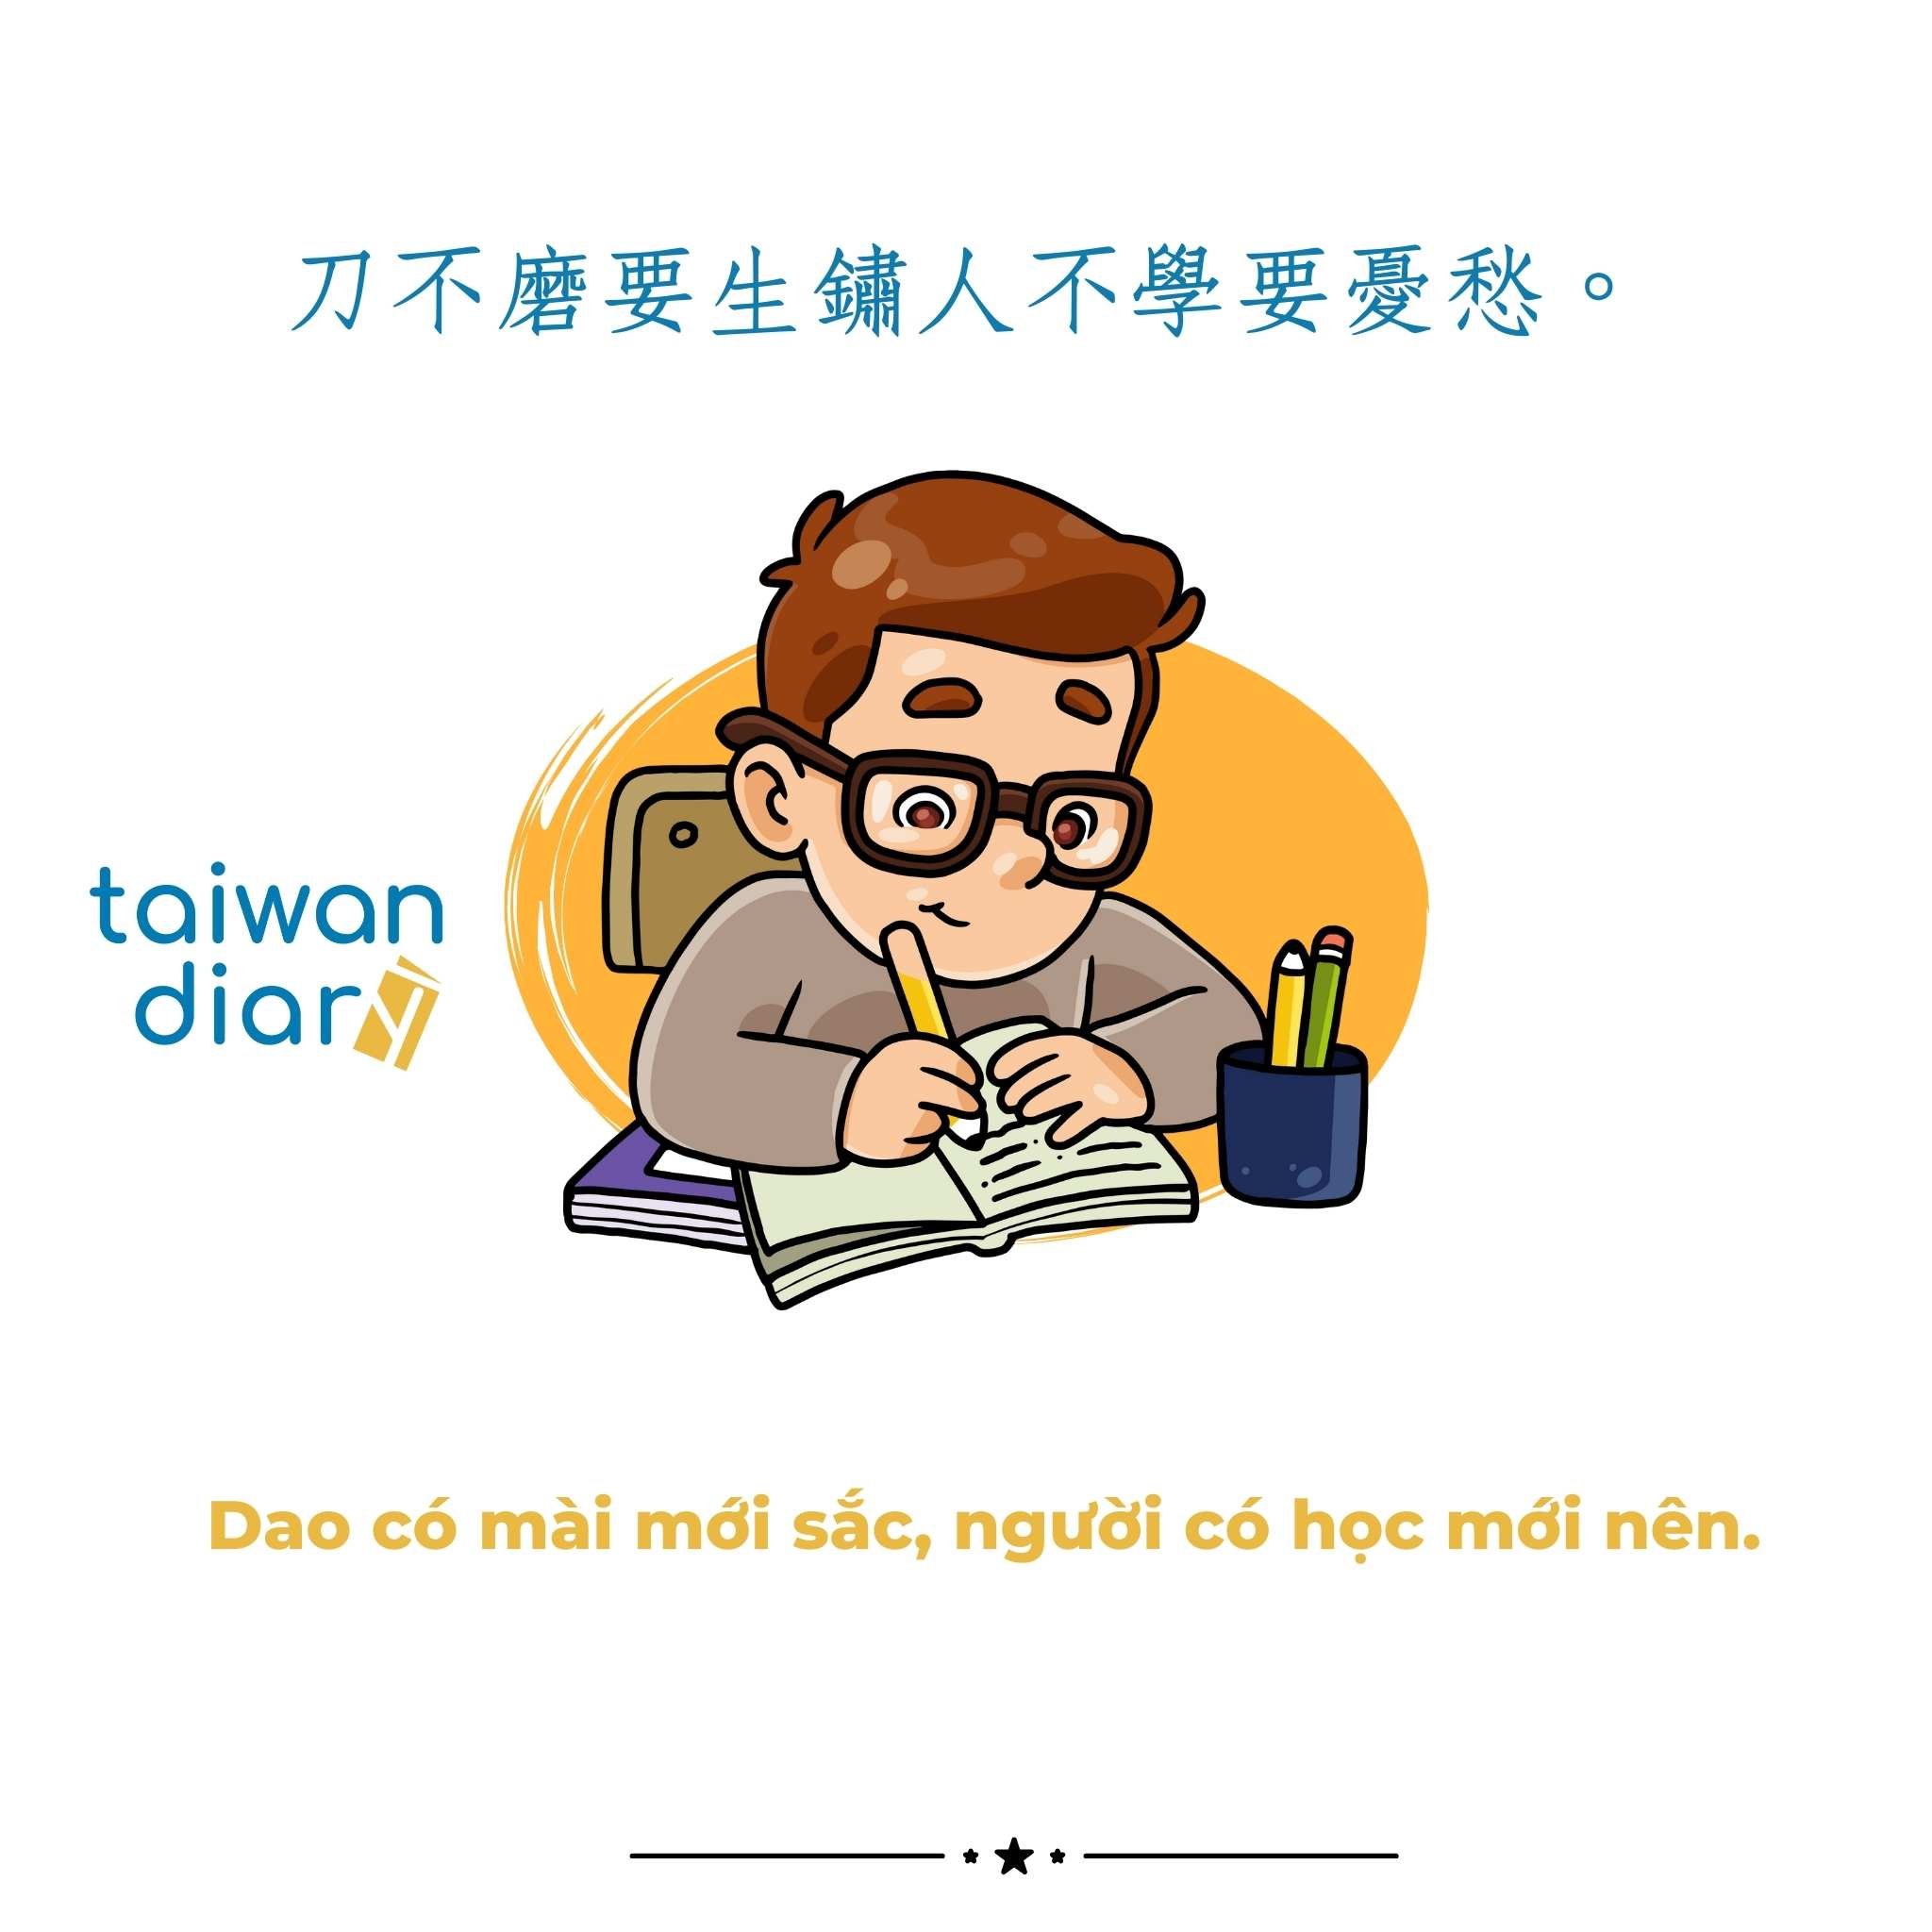 Câu nói tiếng Trung phồn thể chủ đề Học tập